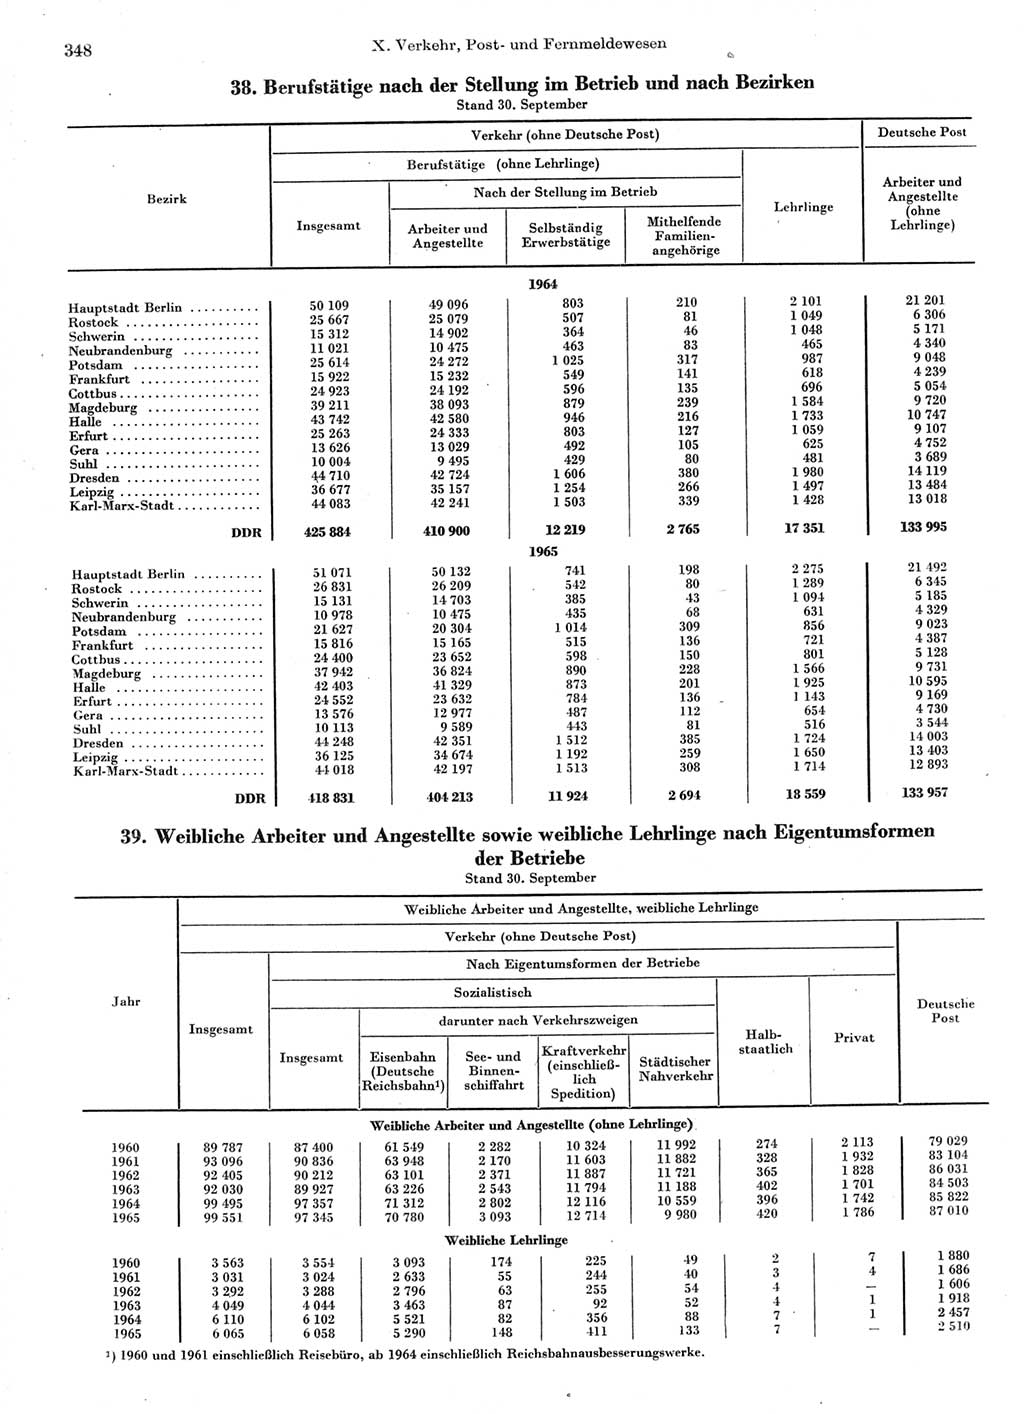 Statistisches Jahrbuch der Deutschen Demokratischen Republik (DDR) 1966, Seite 348 (Stat. Jb. DDR 1966, S. 348)